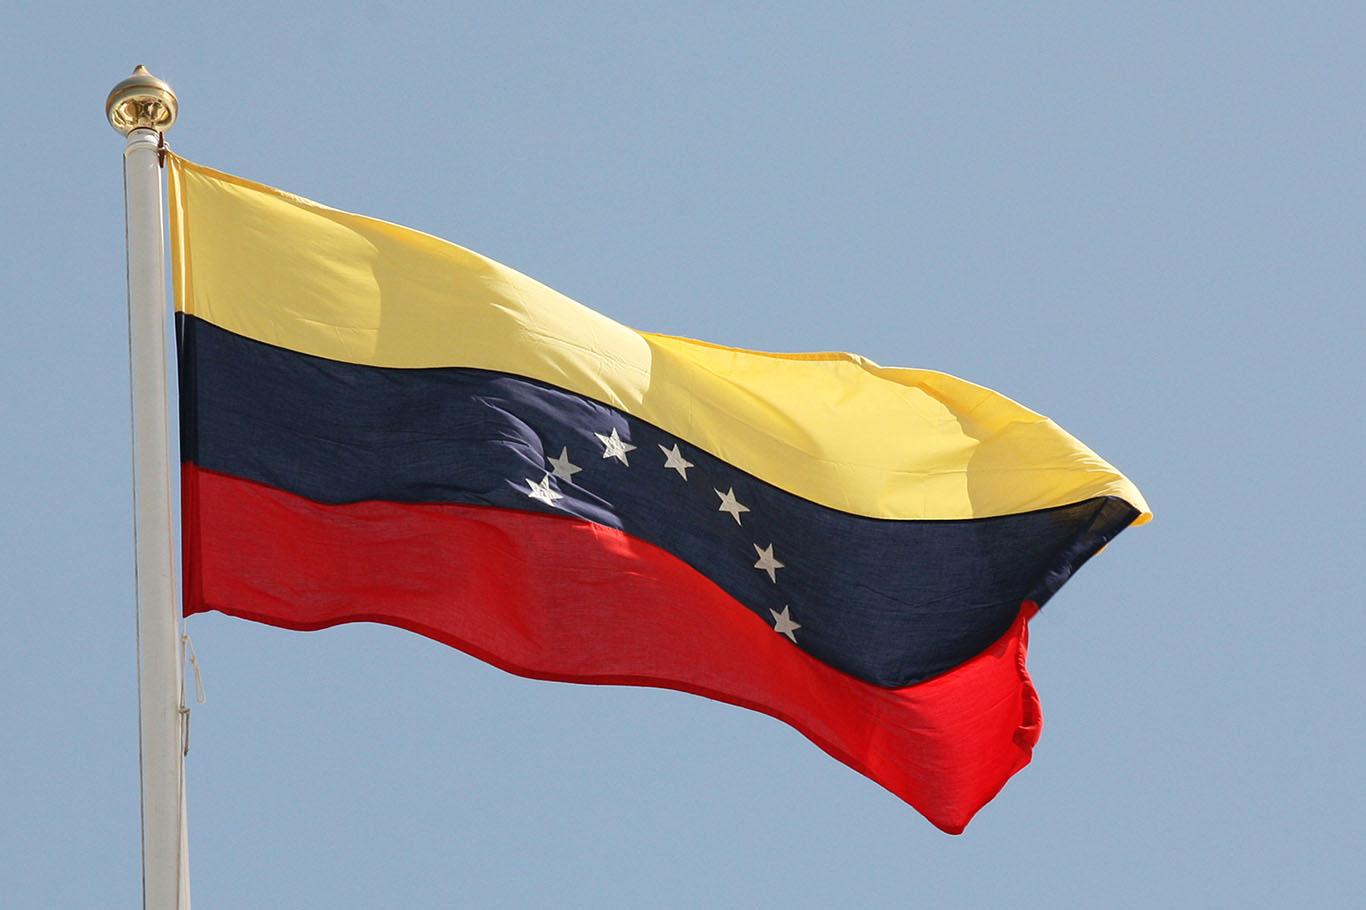 "Venezuela'daki mutabakatı memnuniyetle karşılıyoruz"